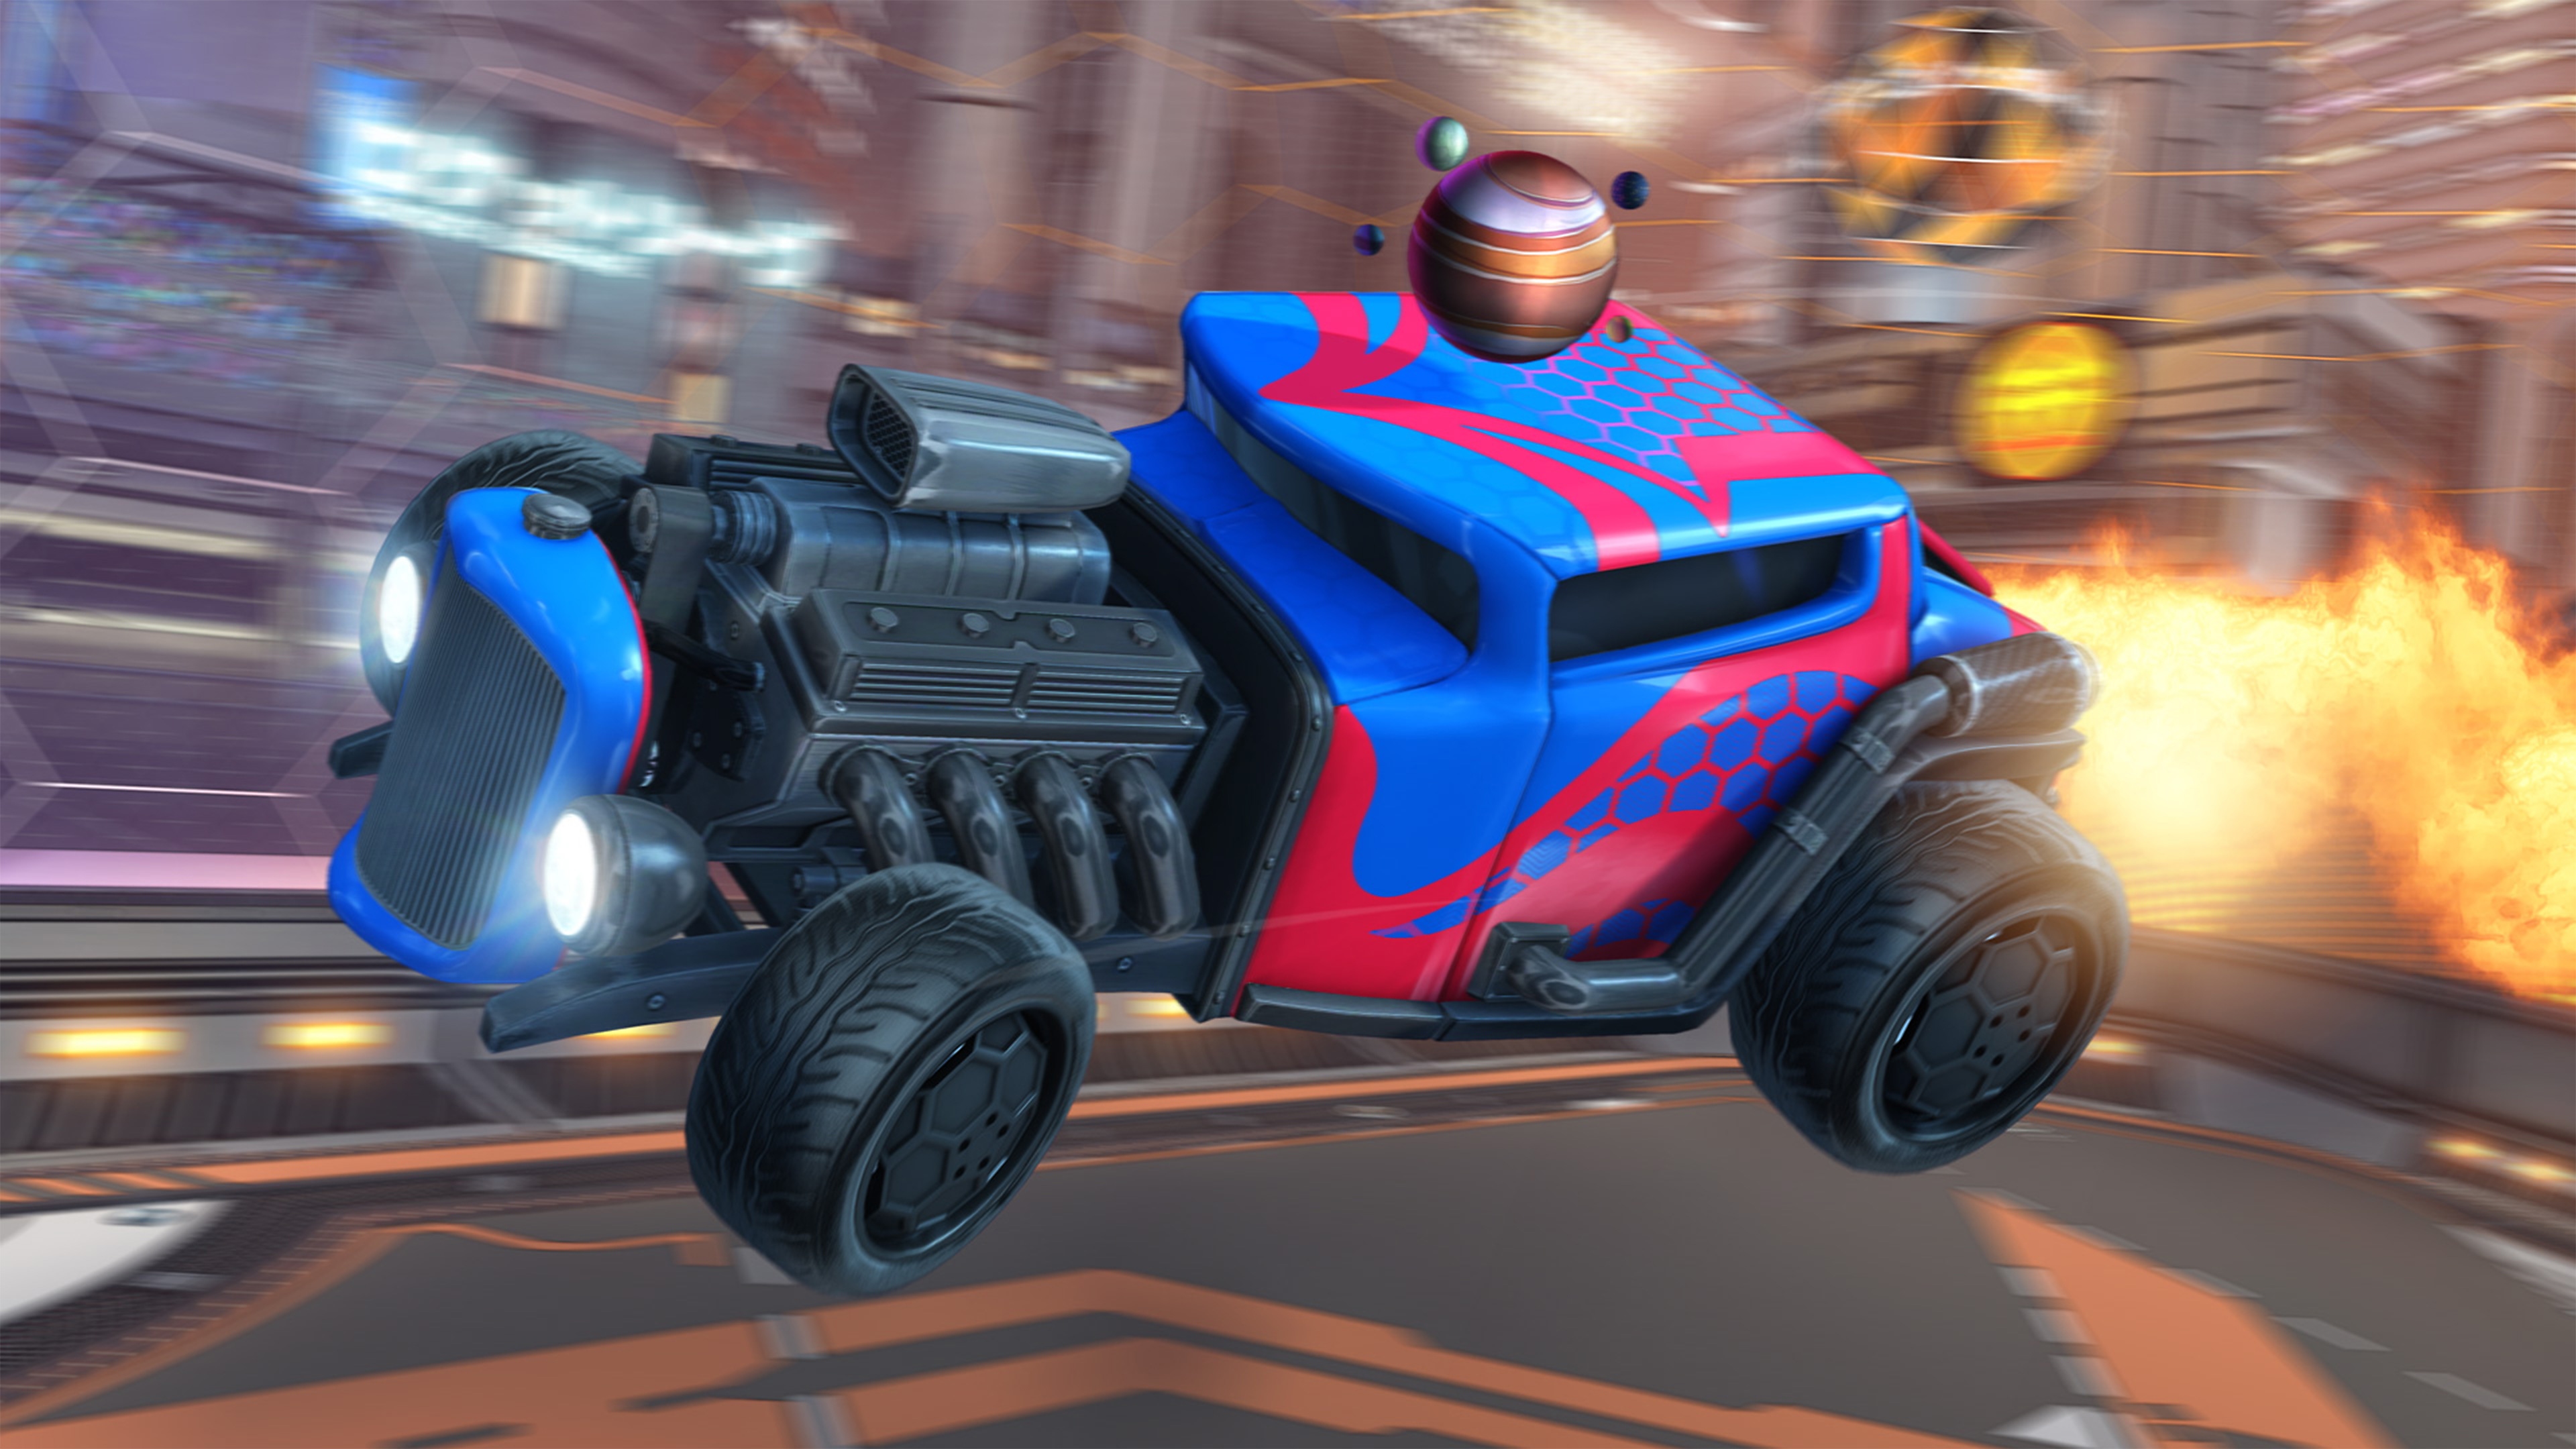 Rocket League ekran görüntüsü, motoru açıkta olan, kırmızı ve maviye boyalı, yarış otomobili tarzındaki arabayı gösteriyor